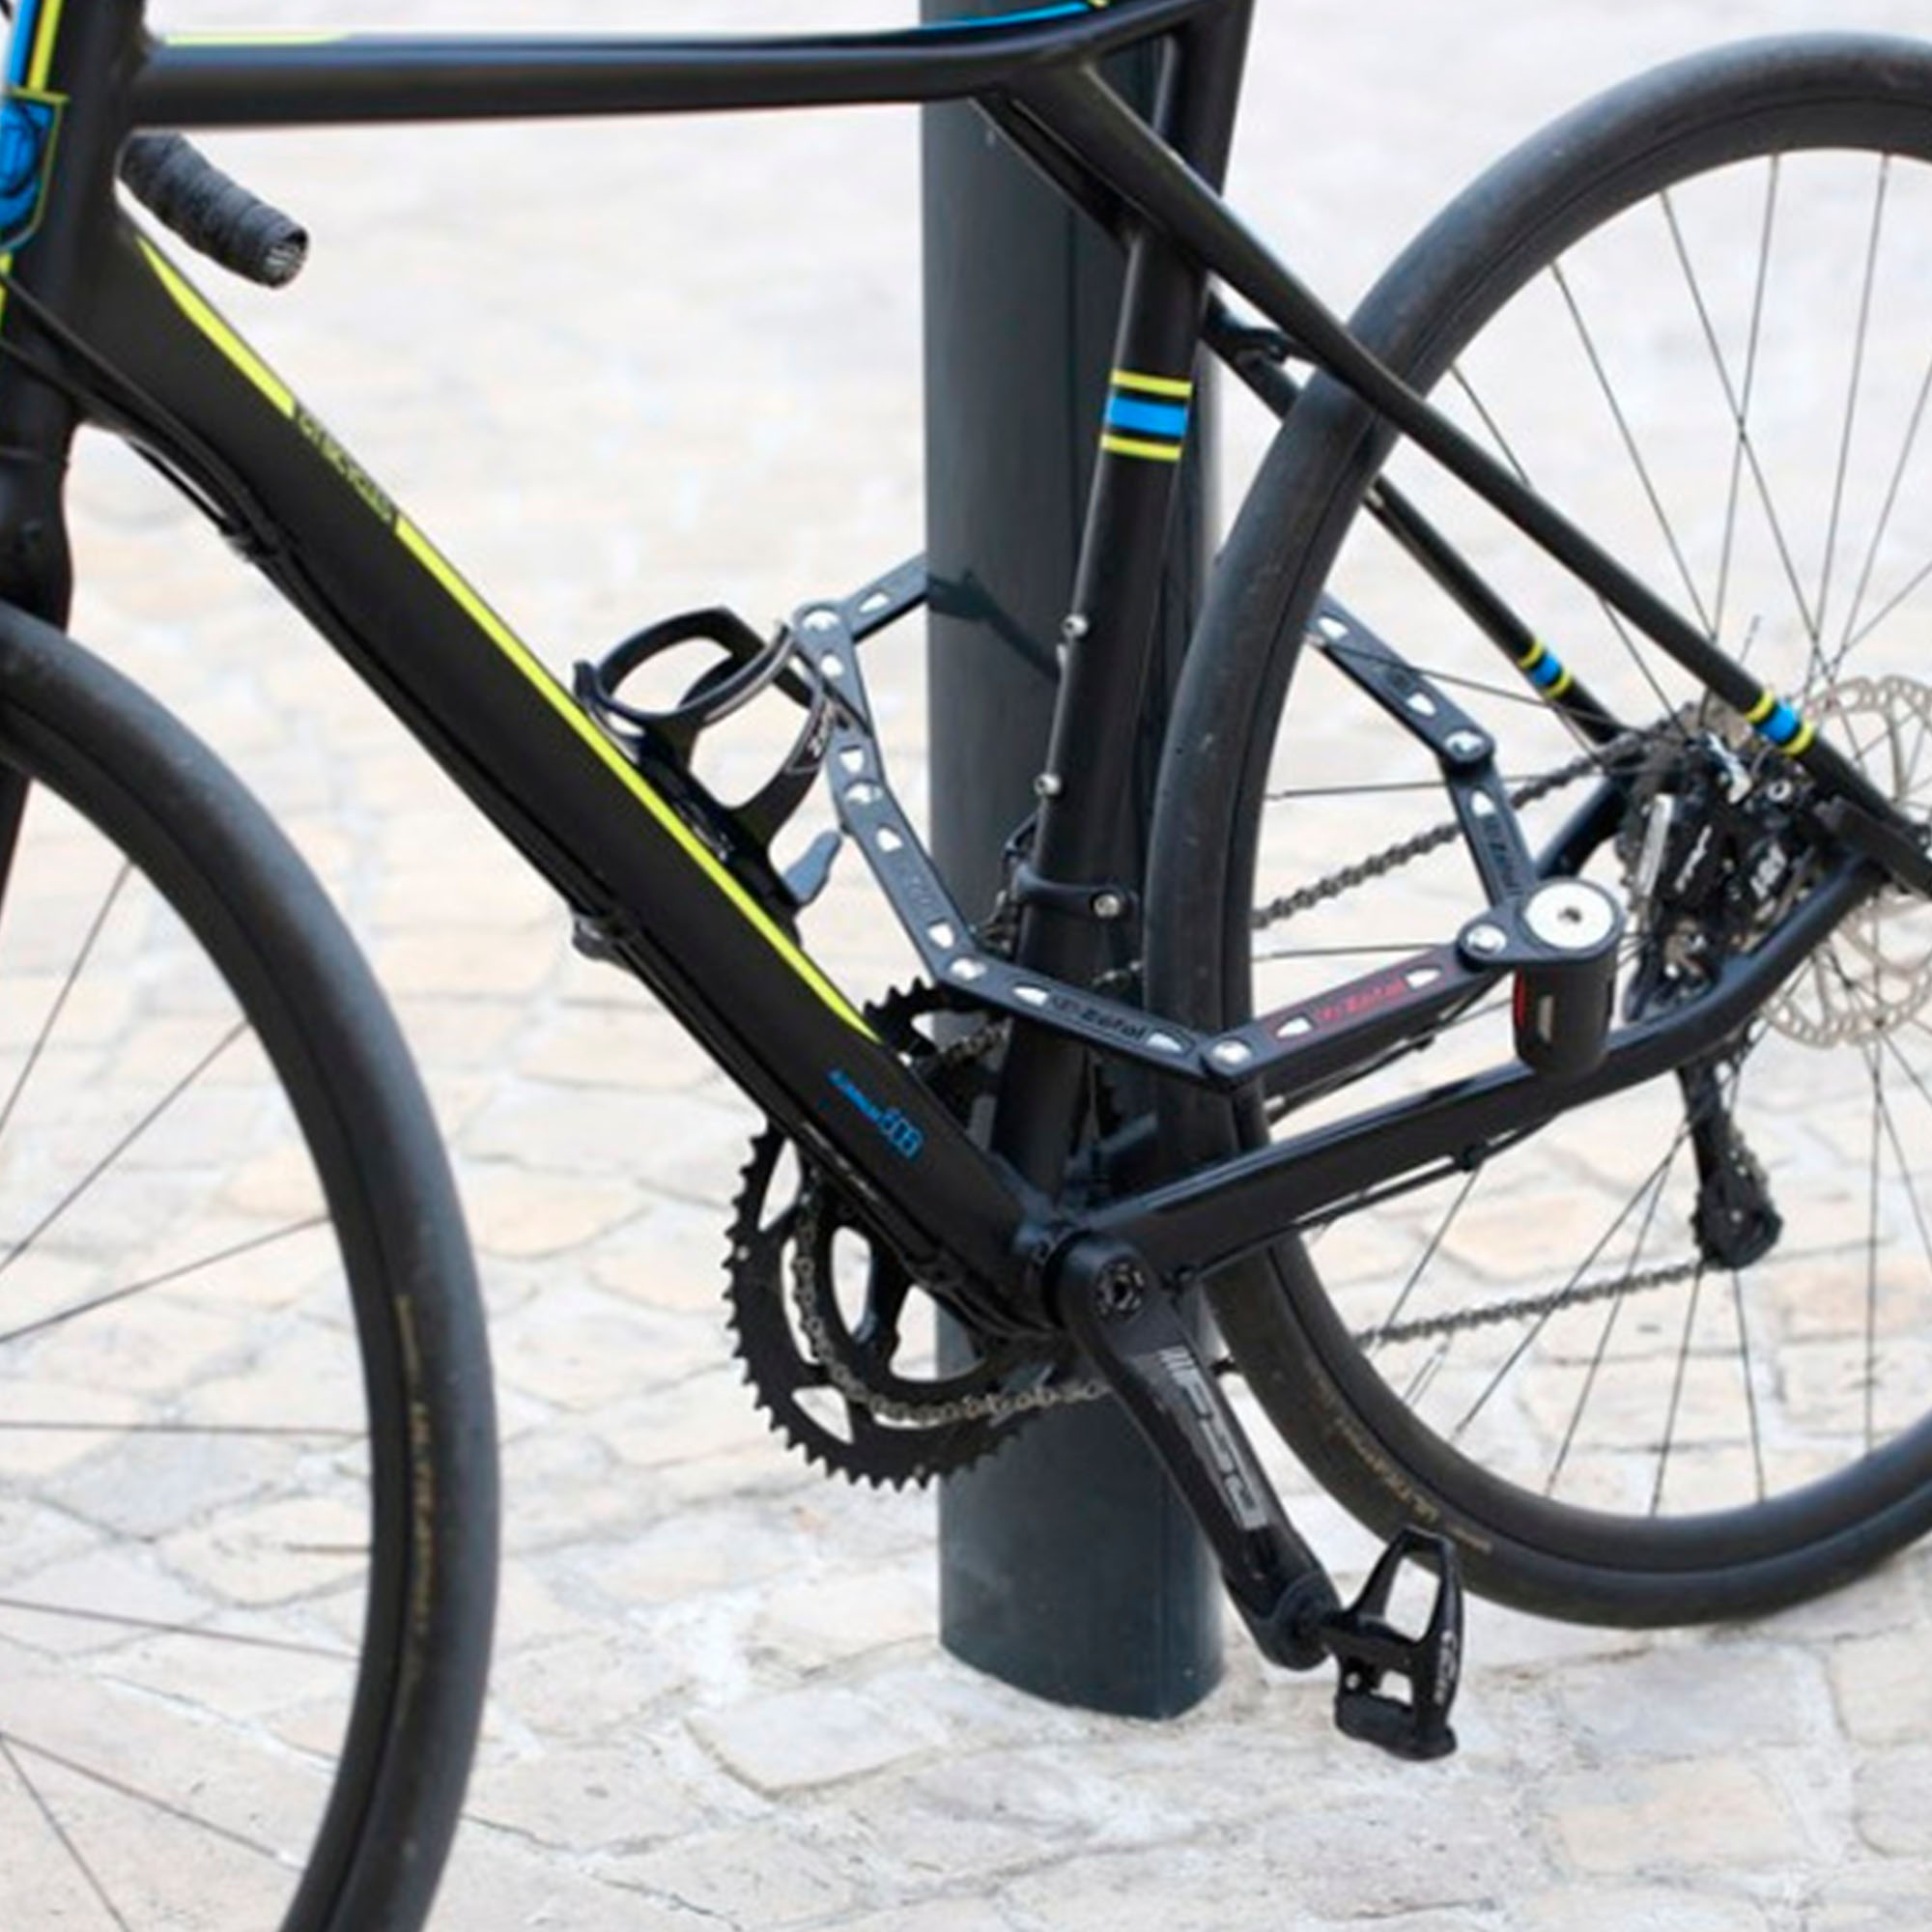 Candados de bicicleta: analizamos 8 modelos para proteger tu bici al máximo